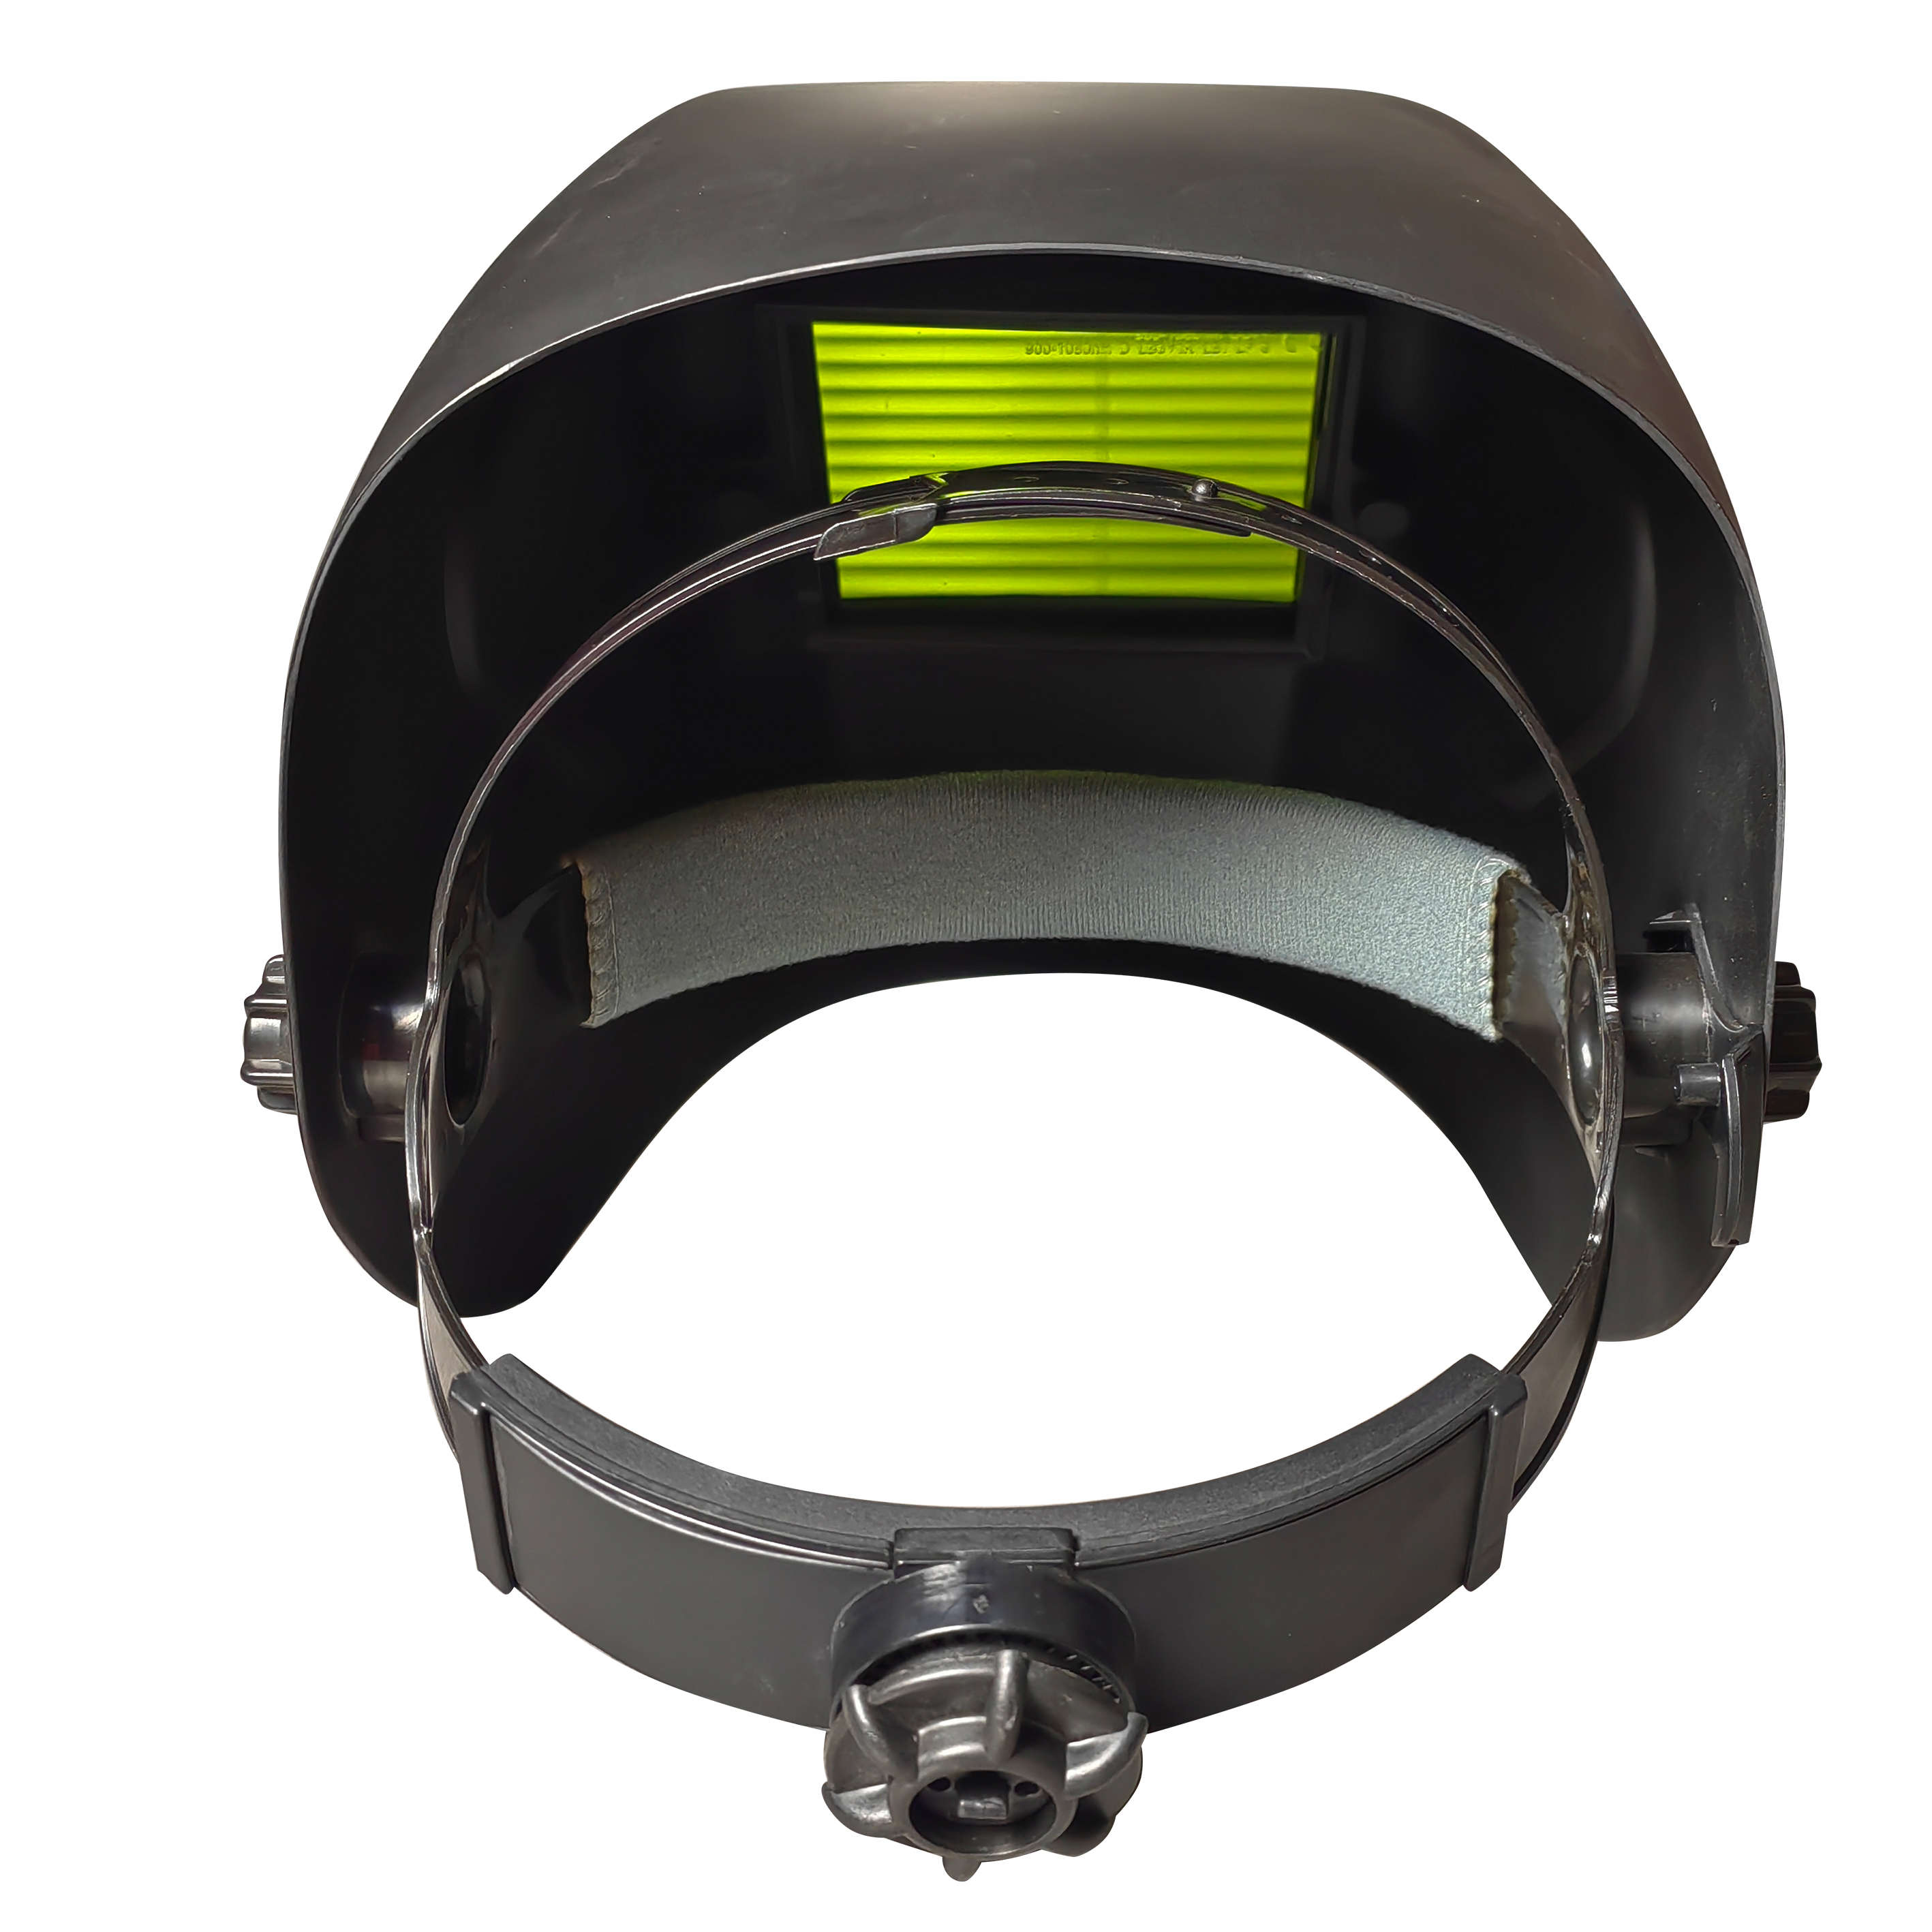 Casco protector de seguridad láser 2 en 1 para soldador láser de mano o soldadura MIG/MAG/TIG/MMA